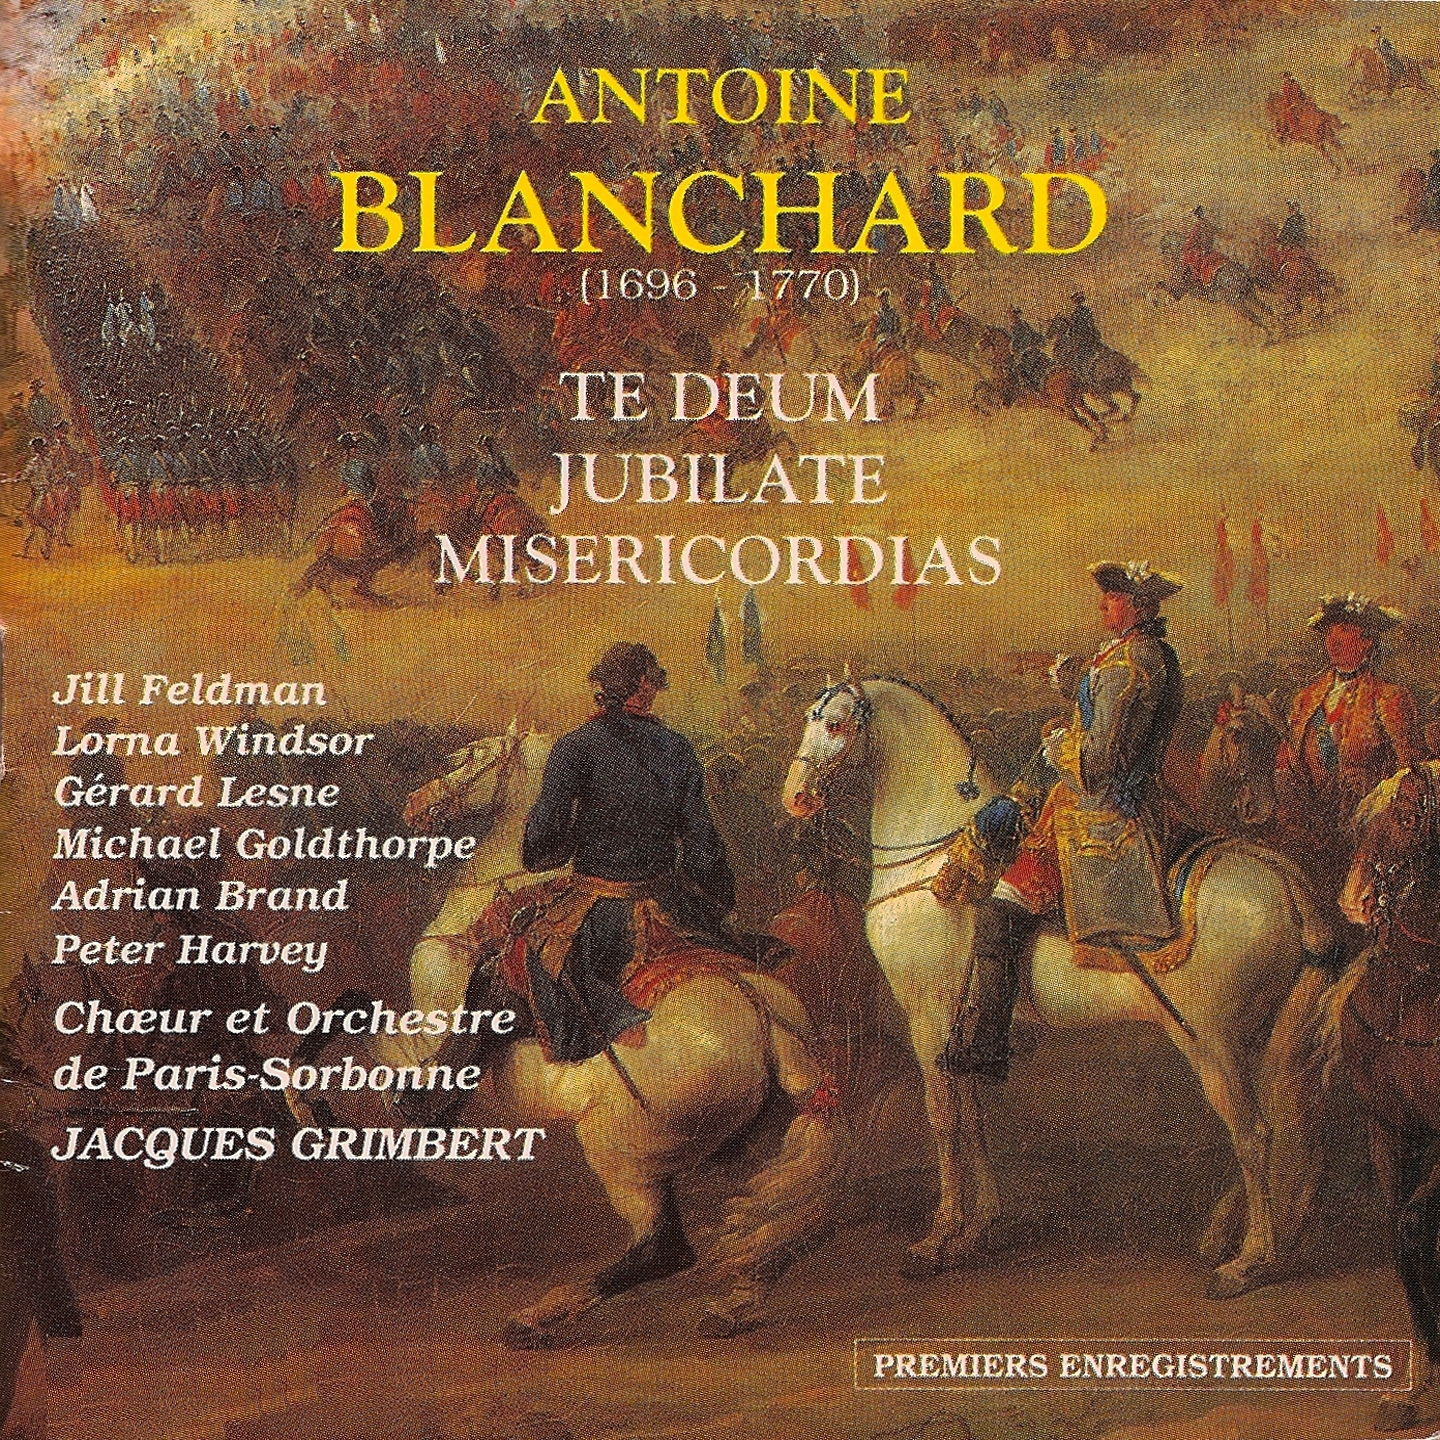 Antoine Blanchard : Te deum  jubilate  misericordias Ch ur et orchestre de Paris Sorbonne